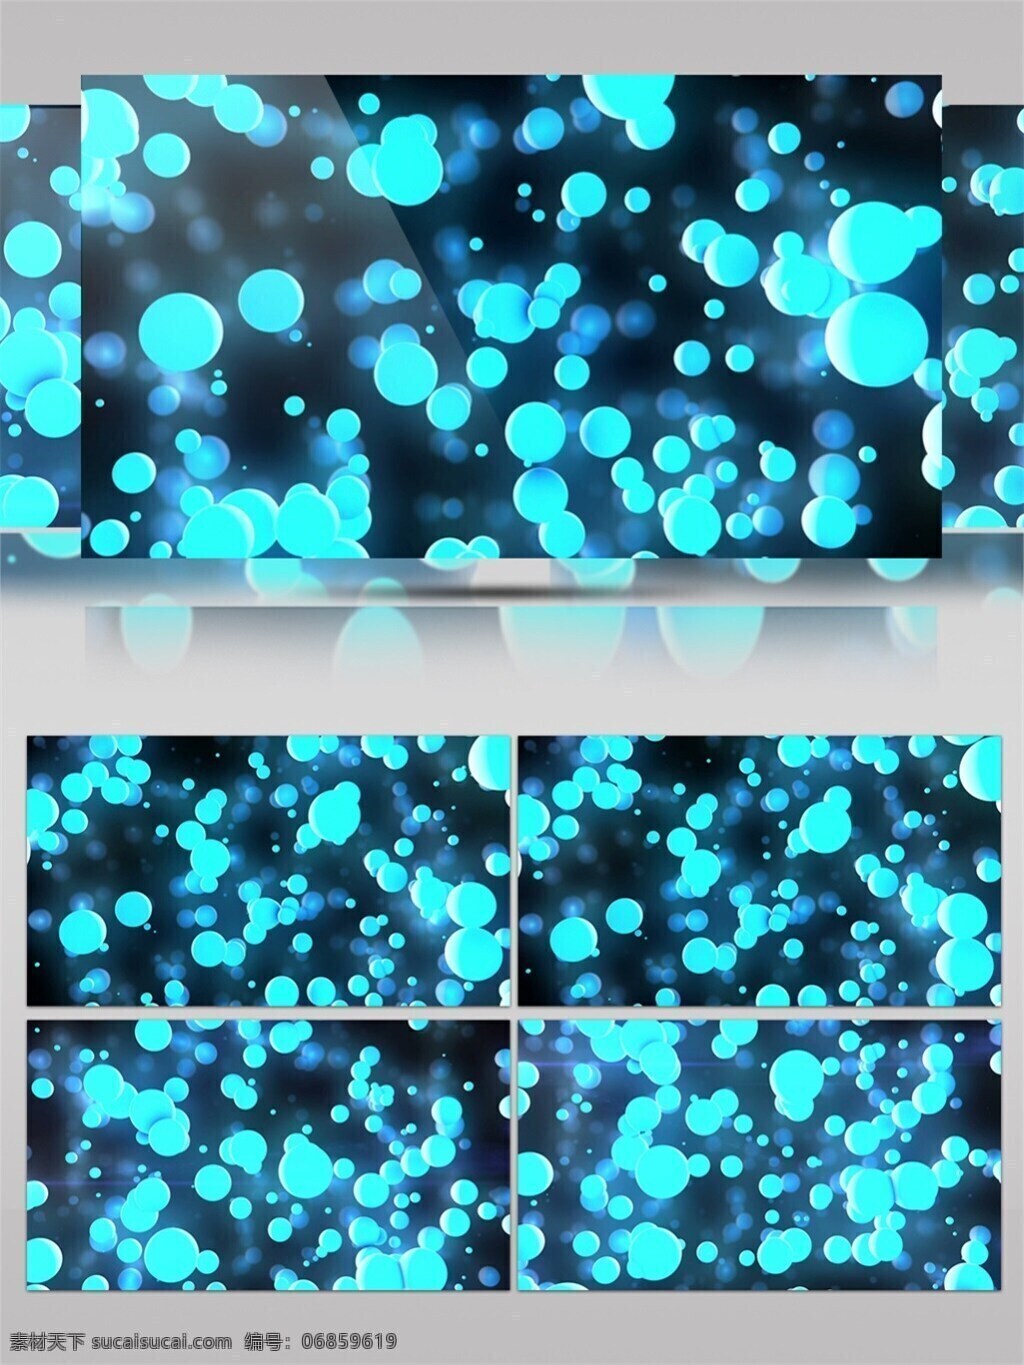 蓝色 梦幻 气泡 高清 视频 高清素材 光景素材 光束 唯美素材 星际 宇宙